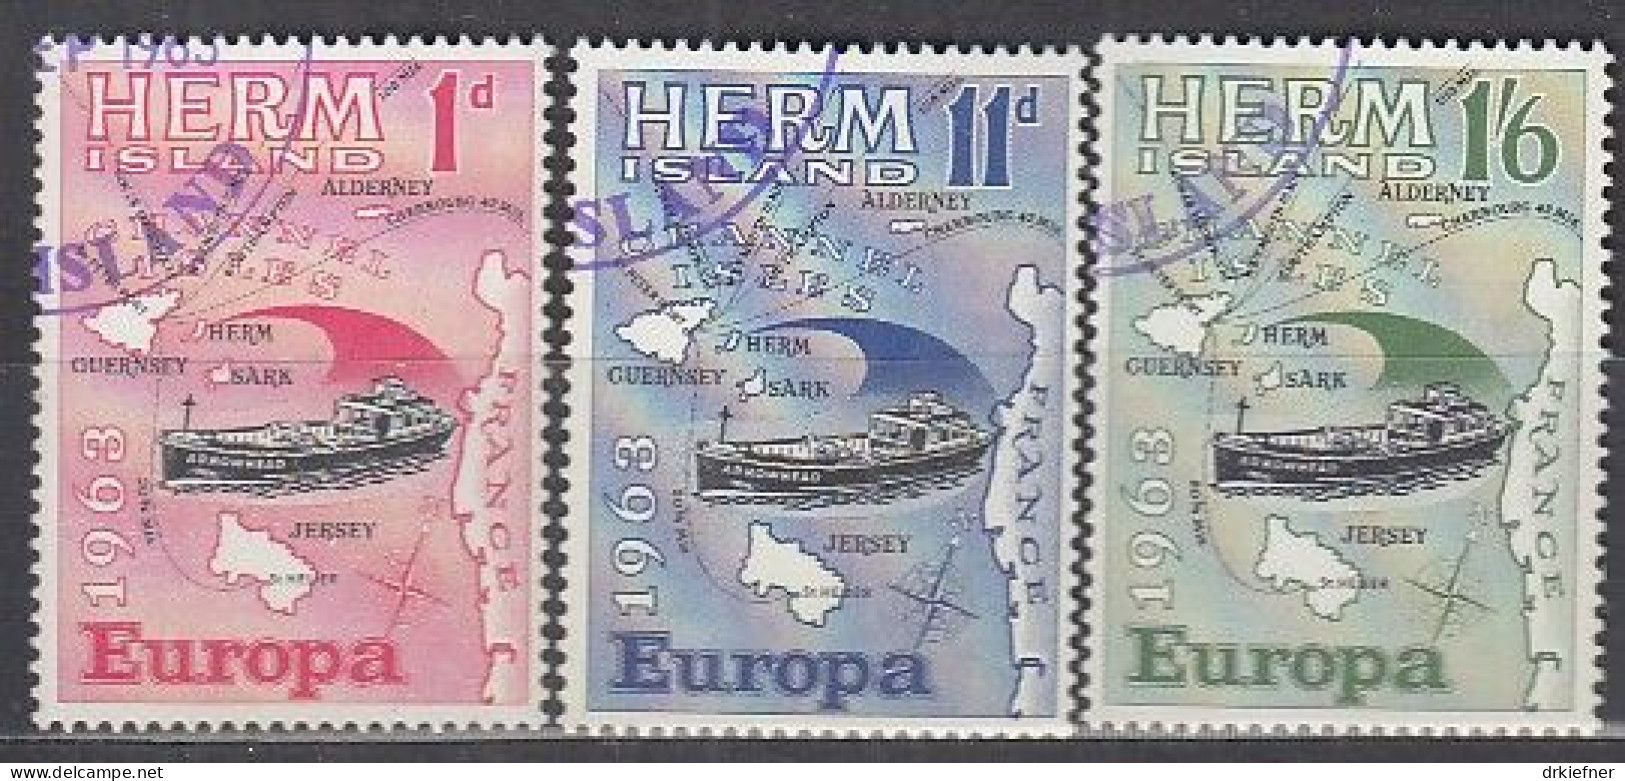 INSEL HERM (Guernsey), Nichtamtl. Briefmarken, 3 Marken, Gestempelt, Europa 1963, Landkarte, Schiff - Guernesey